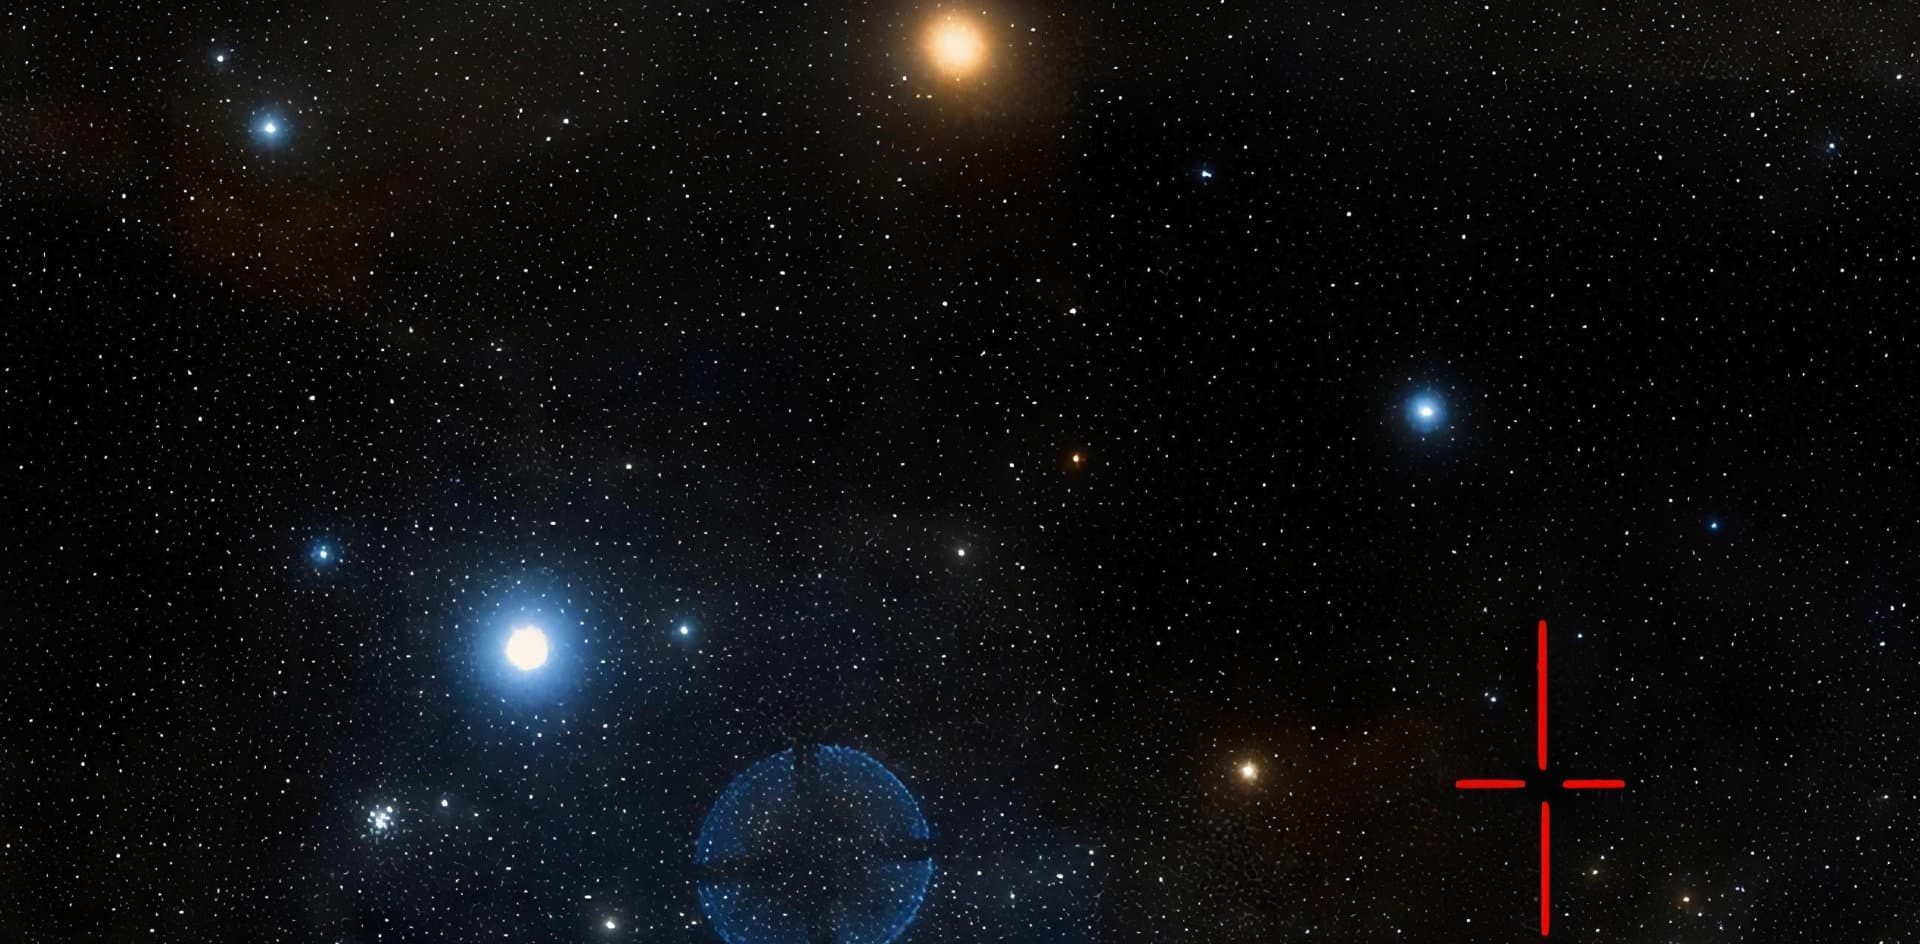 Estudiantes de astronomía descubrieron nuevas estrellas variables desde Bosque Alegre